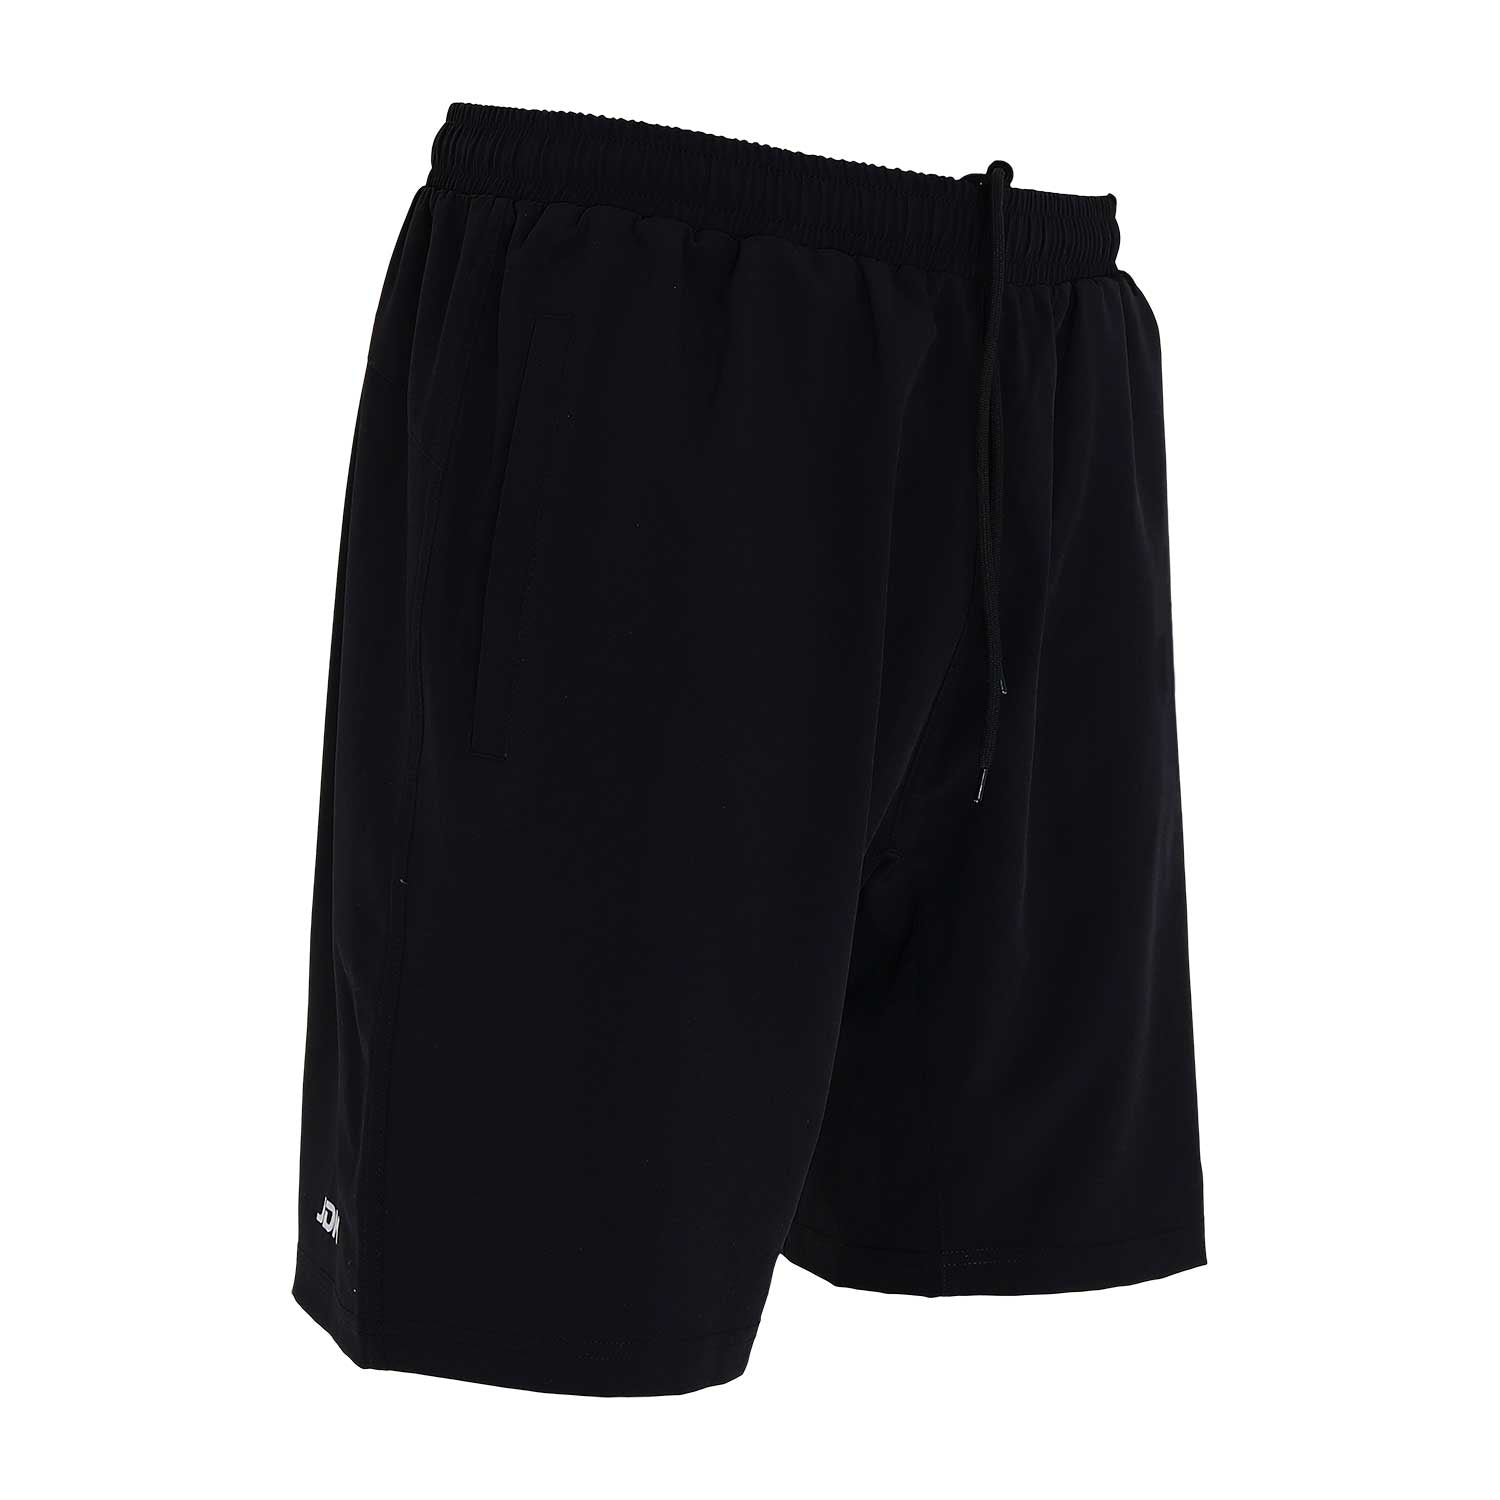 JDH Kinetic Men's Shorts